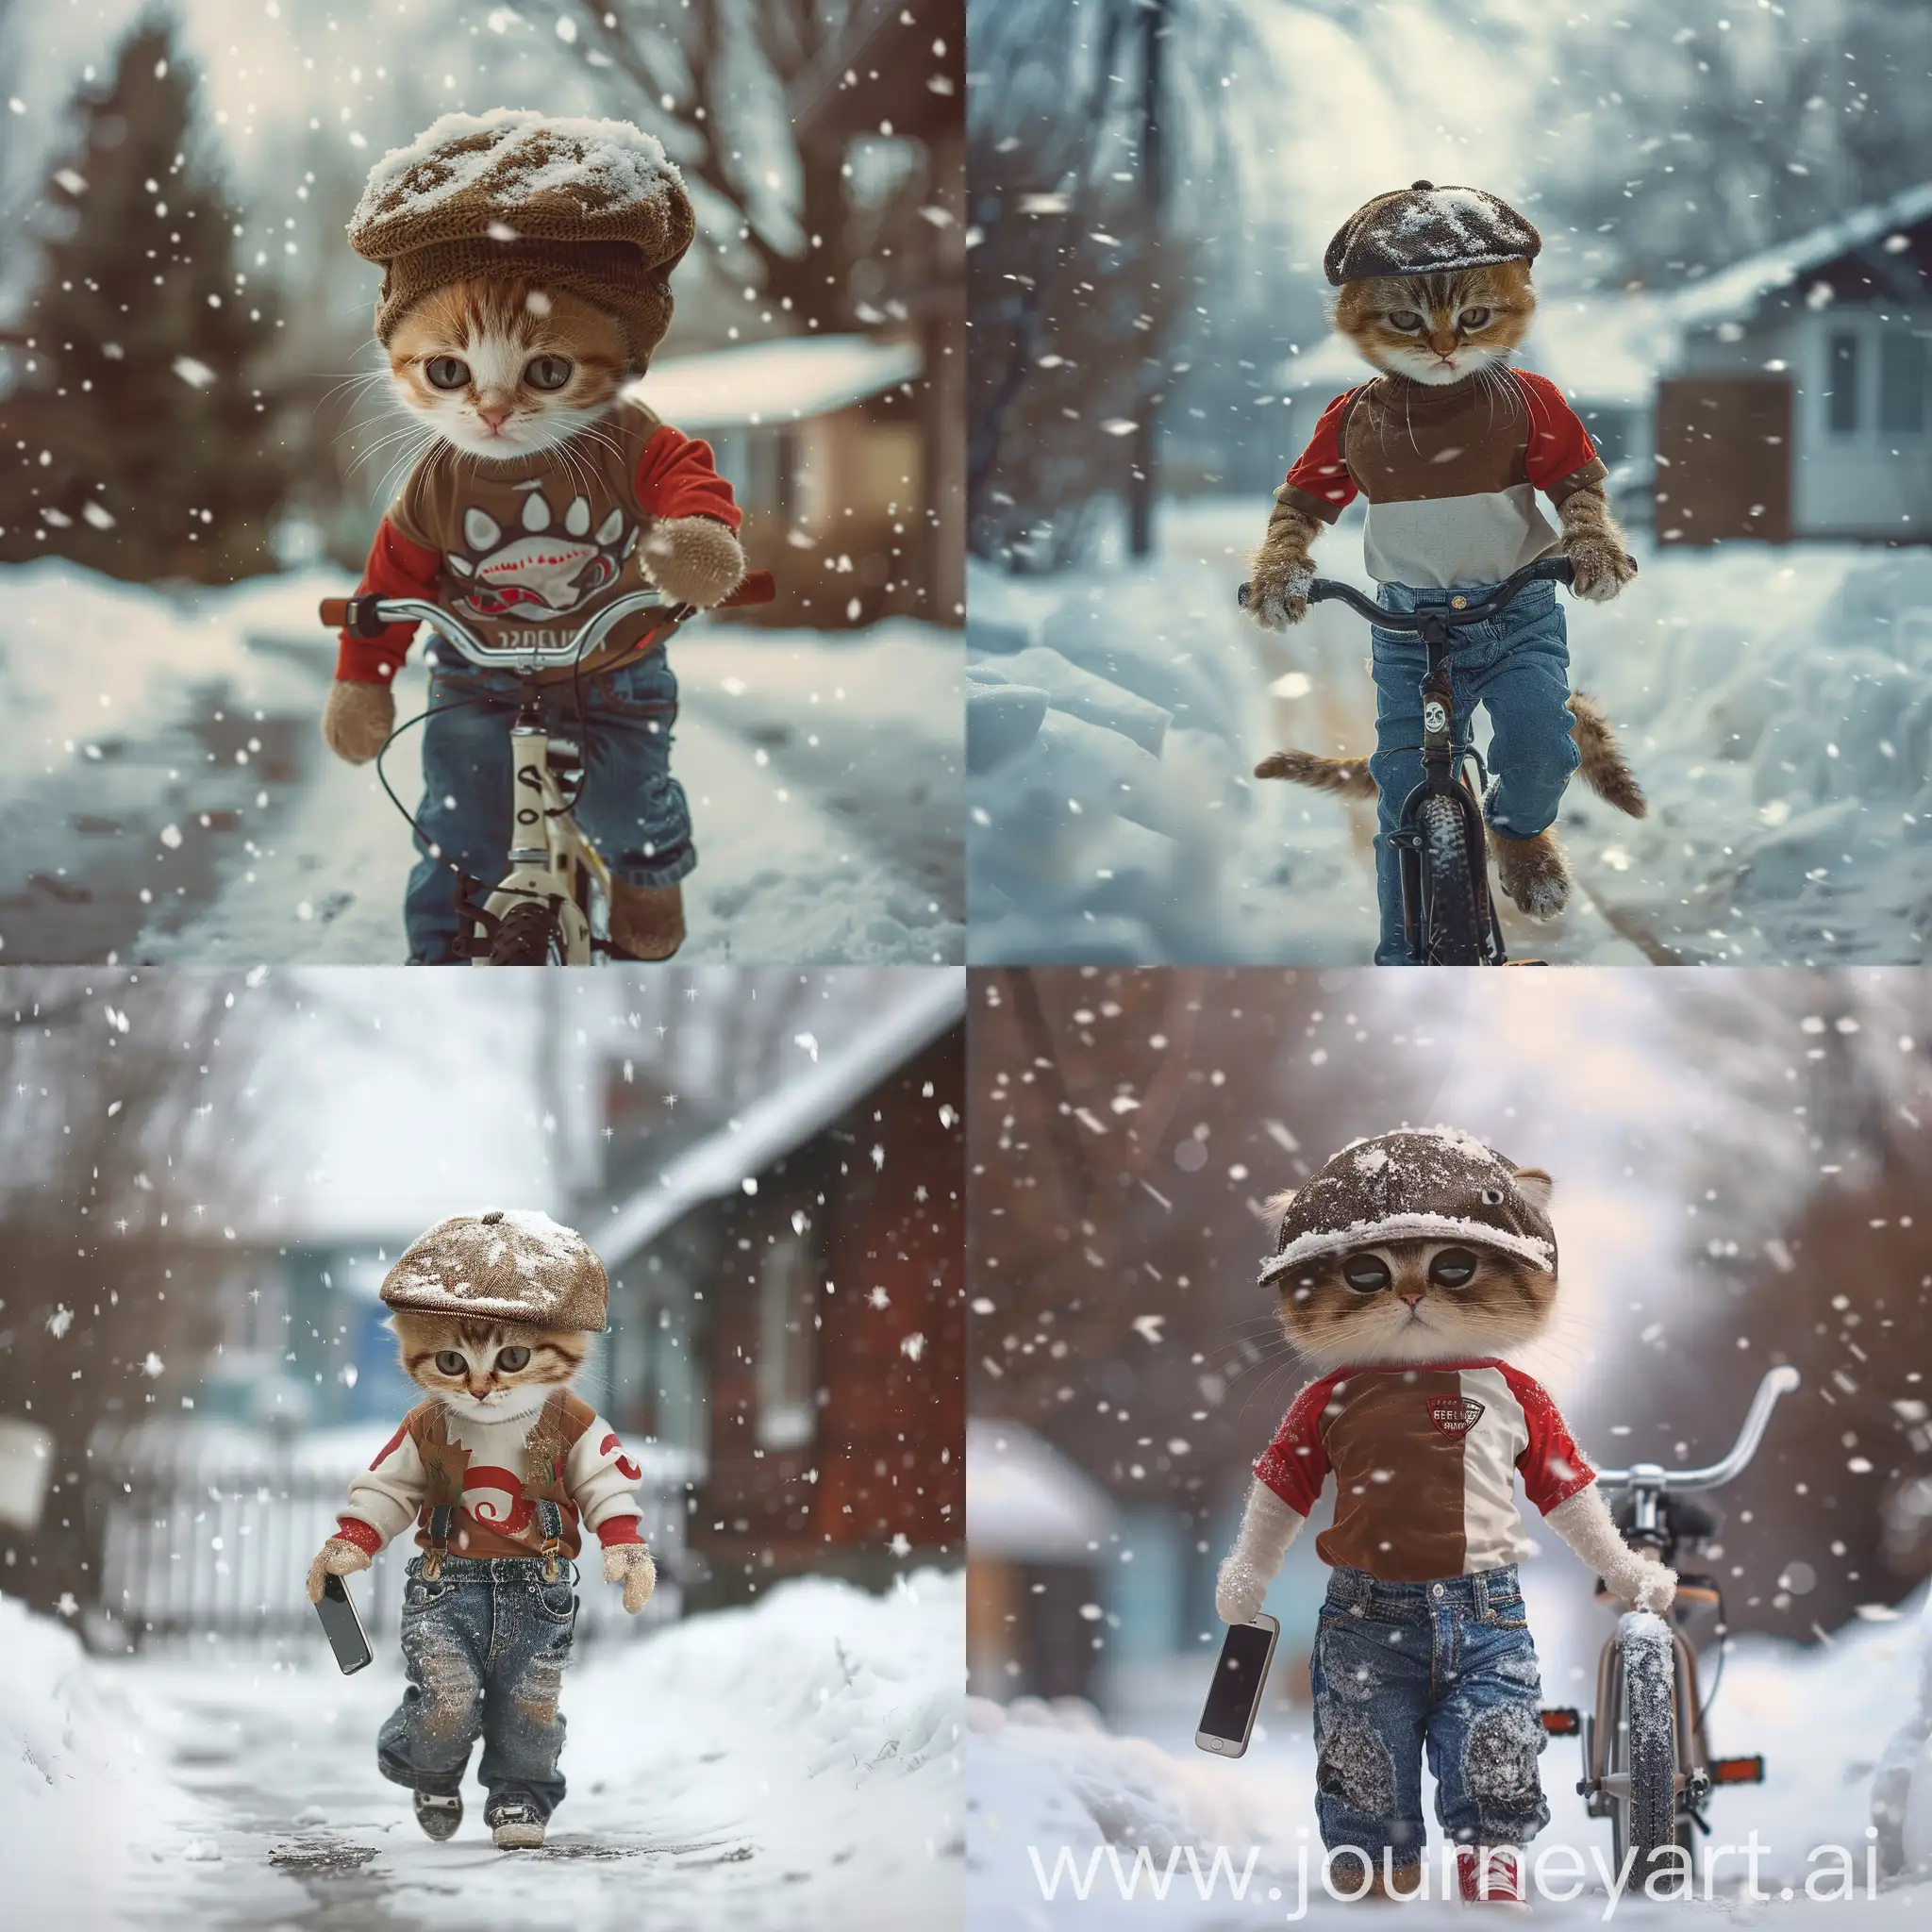 Adorable-Kitten-in-Winter-Scene-Walking-Home-in-Snowfall